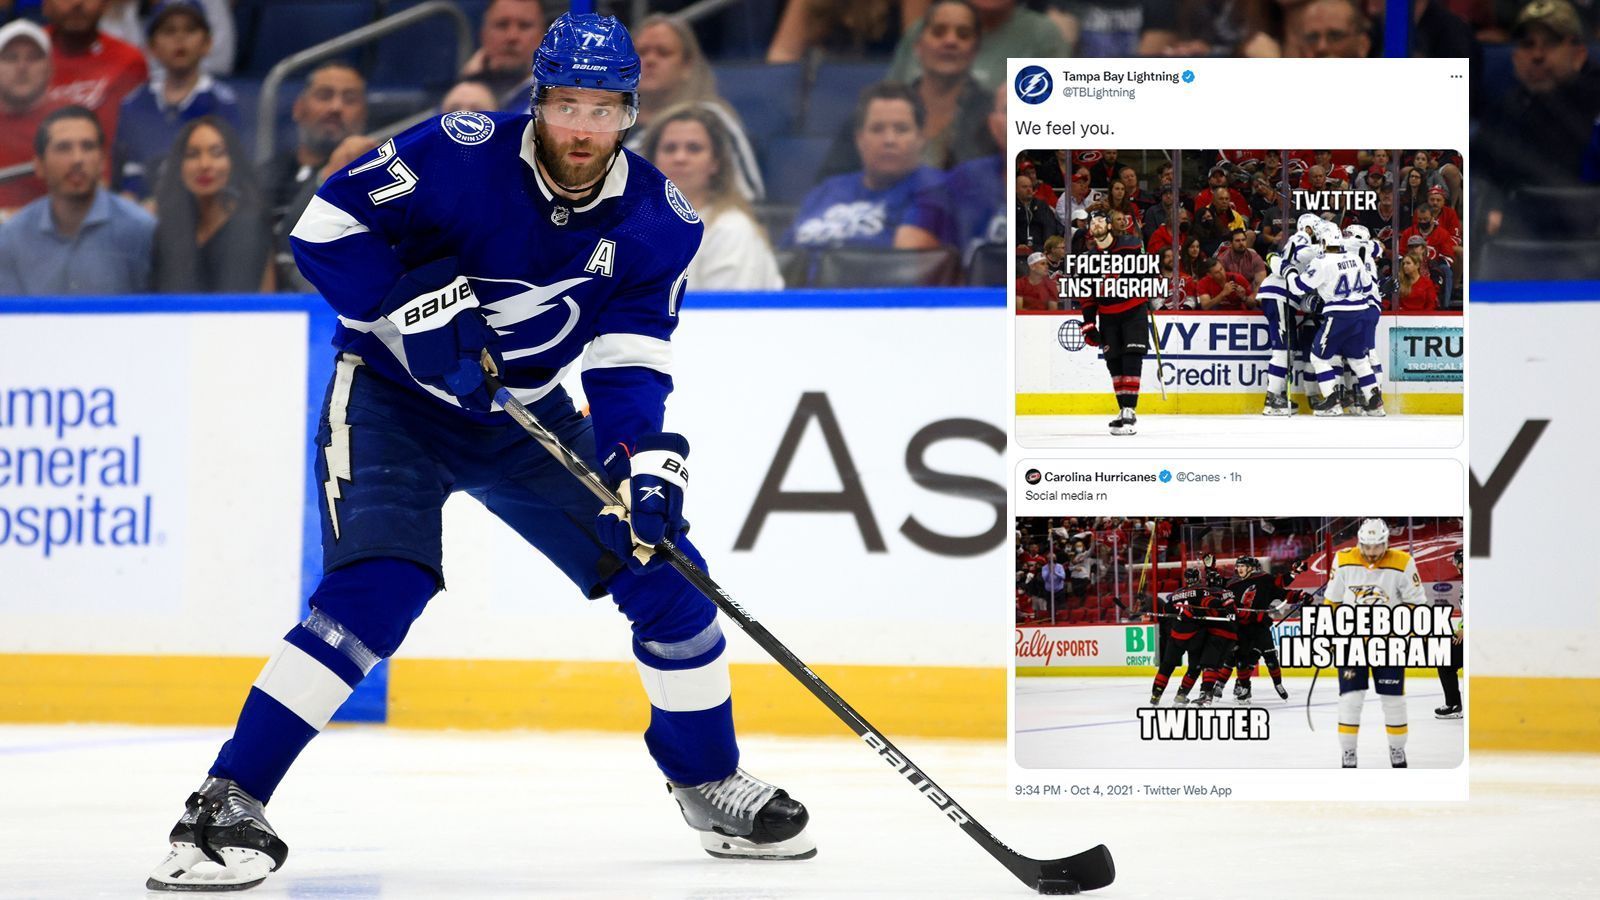 
                <strong>Tampa Bay Lightnings</strong><br>
                Die NHL-Teams Tampa Bay Lightnings und Carolina Hurricanes haben Spaß mit ihren Memes zum Social-Media-Ausfall.
              